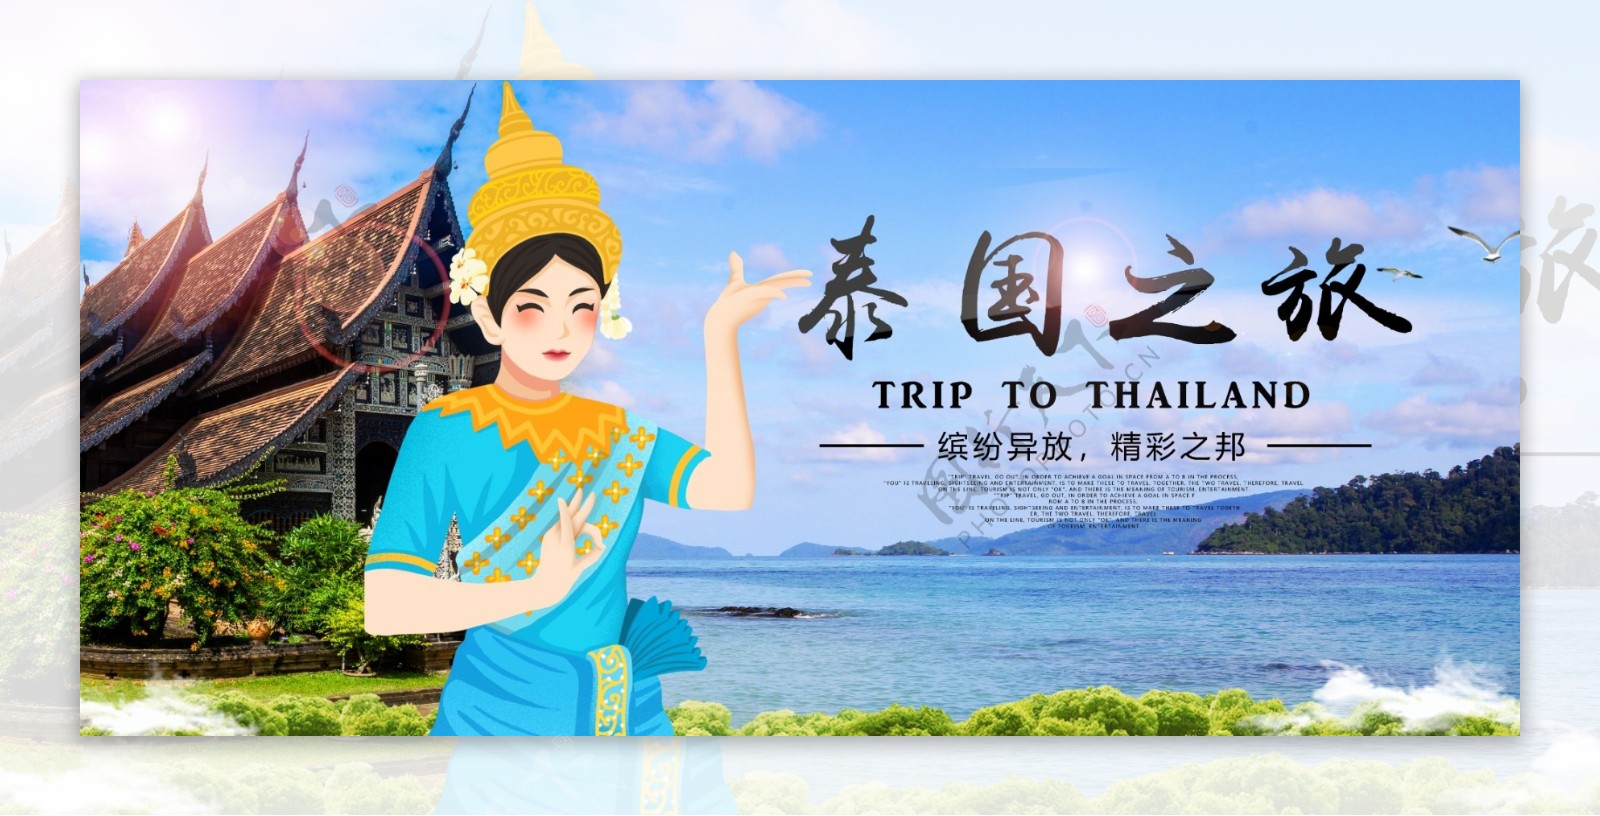 泰国之旅旅游旅行宣传海报素材